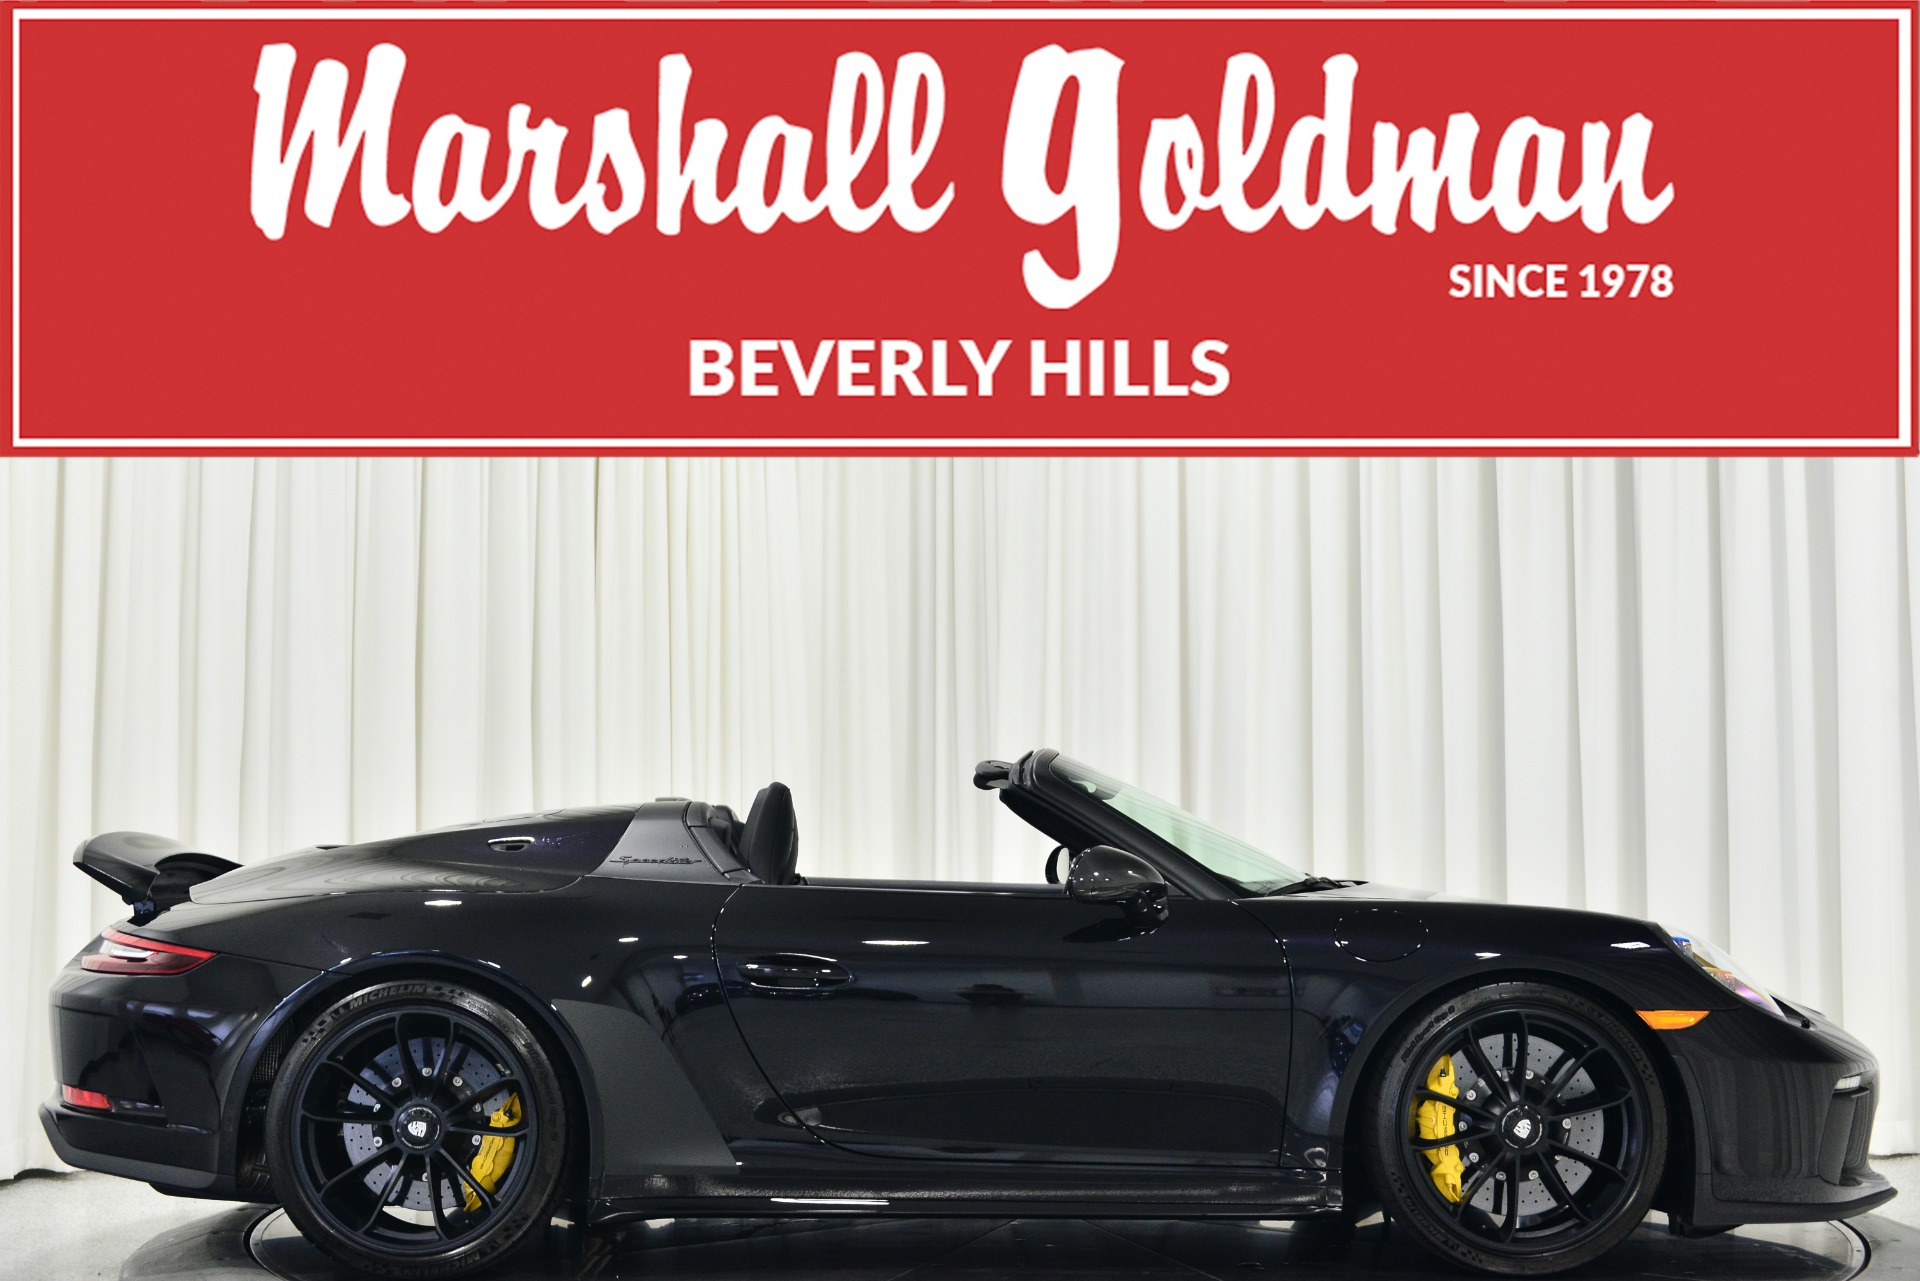 Used 2019 Porsche 911 Speedster For Sale (Sold) | Marshall Goldman 